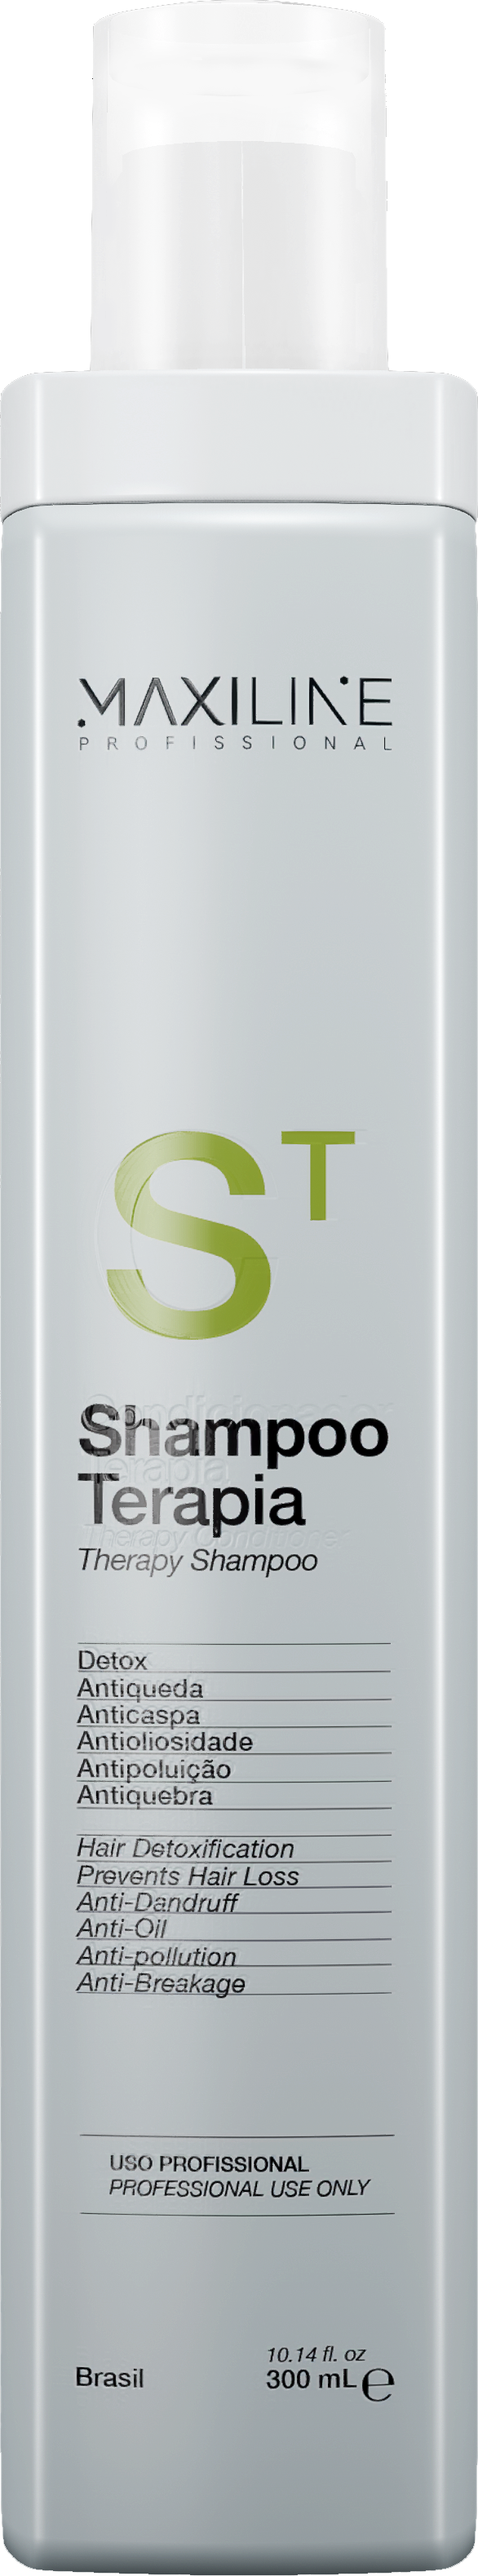 Shampoo Terapia